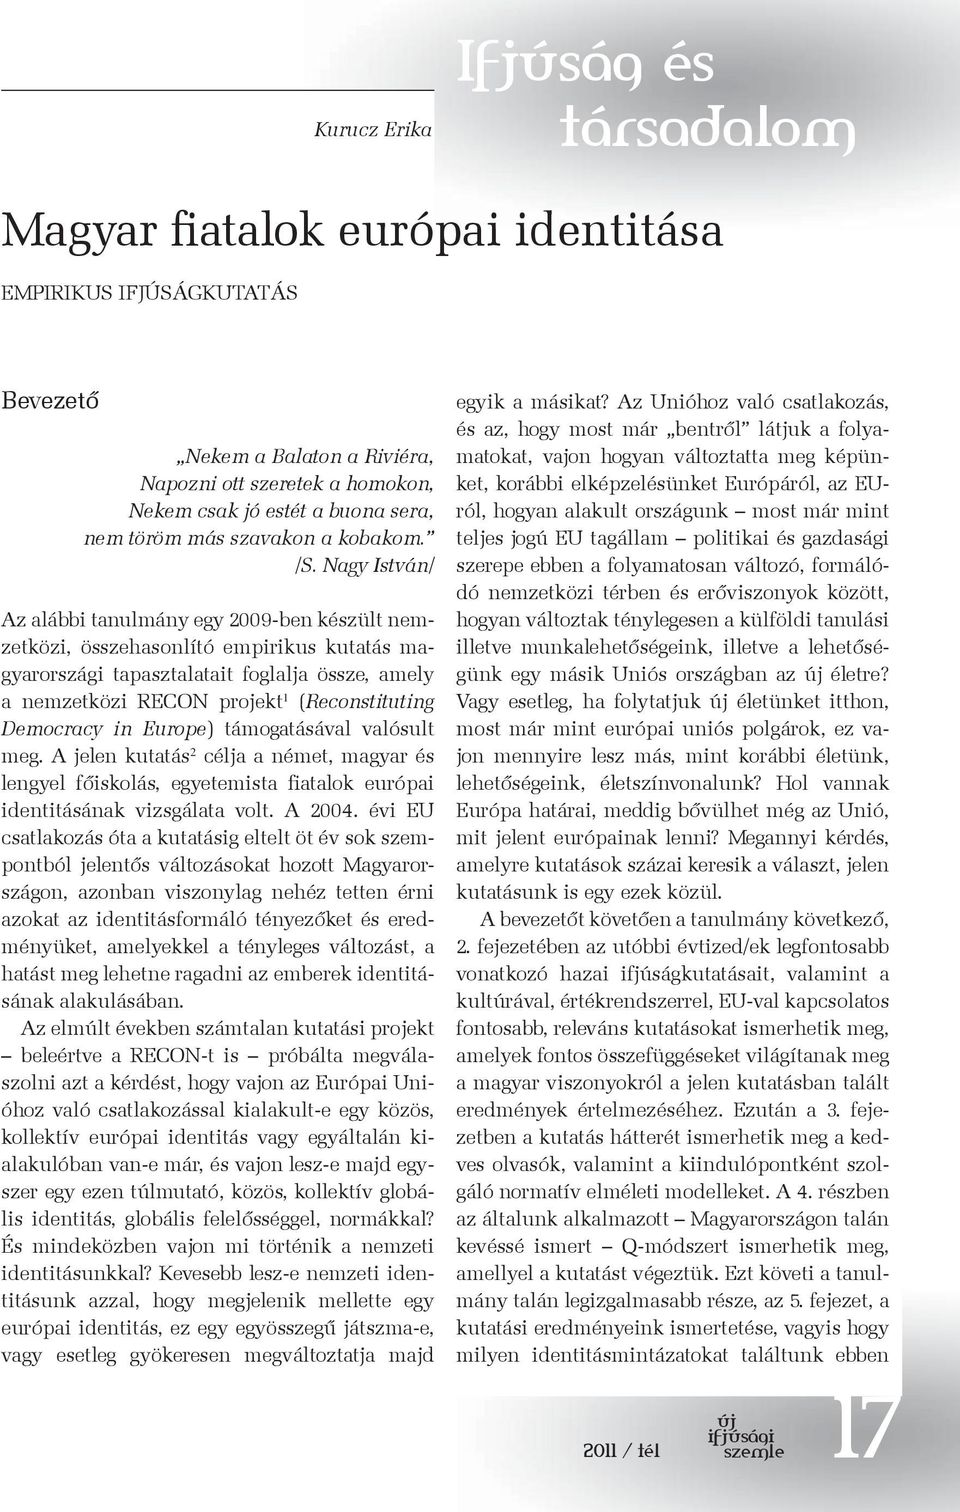 Nagy István/ Az alábbi tanulmány egy 2009-ben készült nemzetközi, összehasonlító empirikus kutatás magyarországi tapasztalatait foglalja össze, amely a nemzetközi RECON projekt 1 (Reconstituting